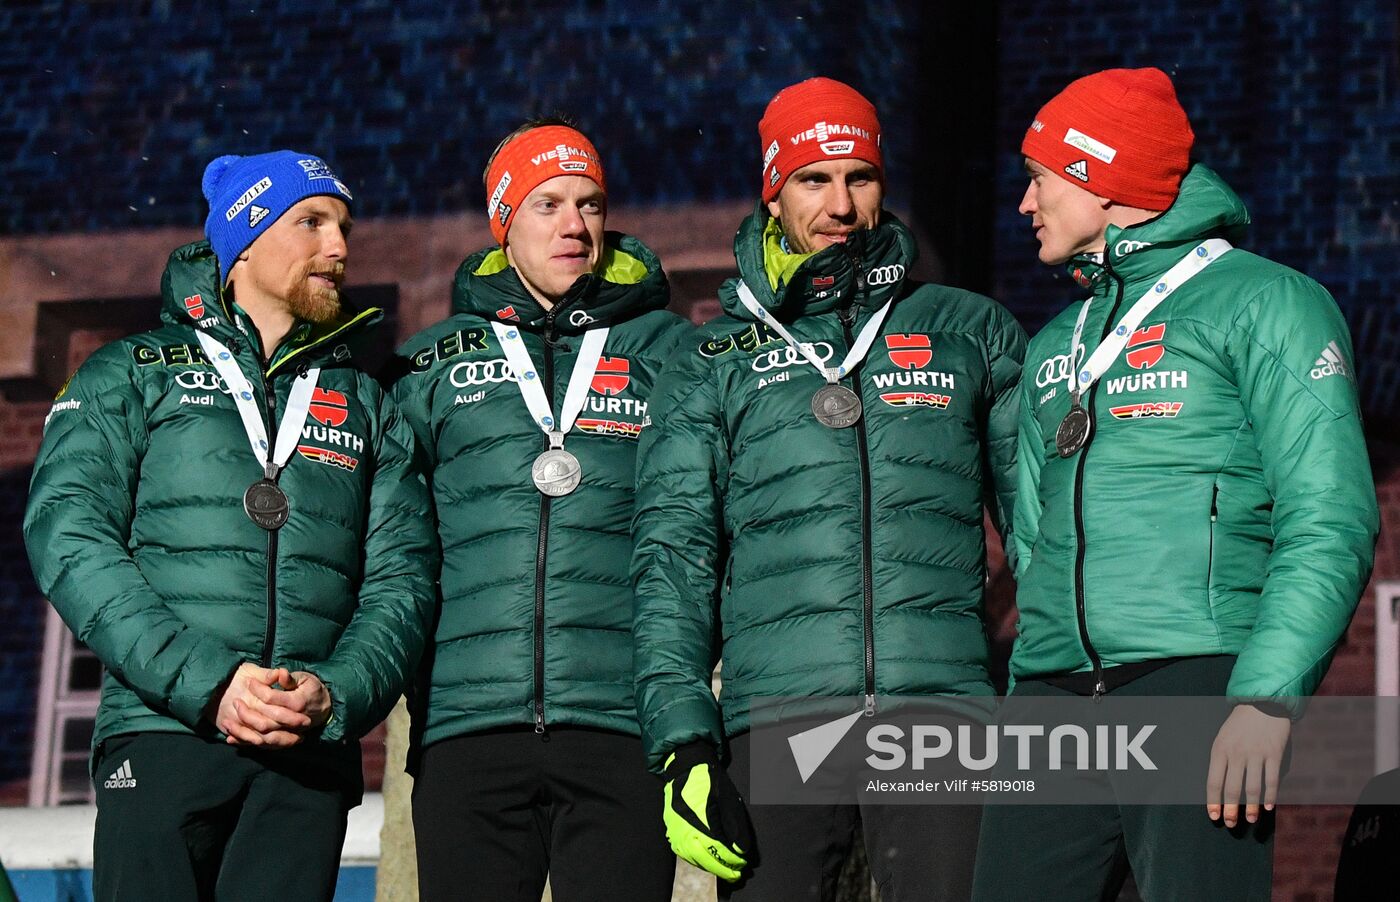 Sweden Biathlon Worlds Relay Medals